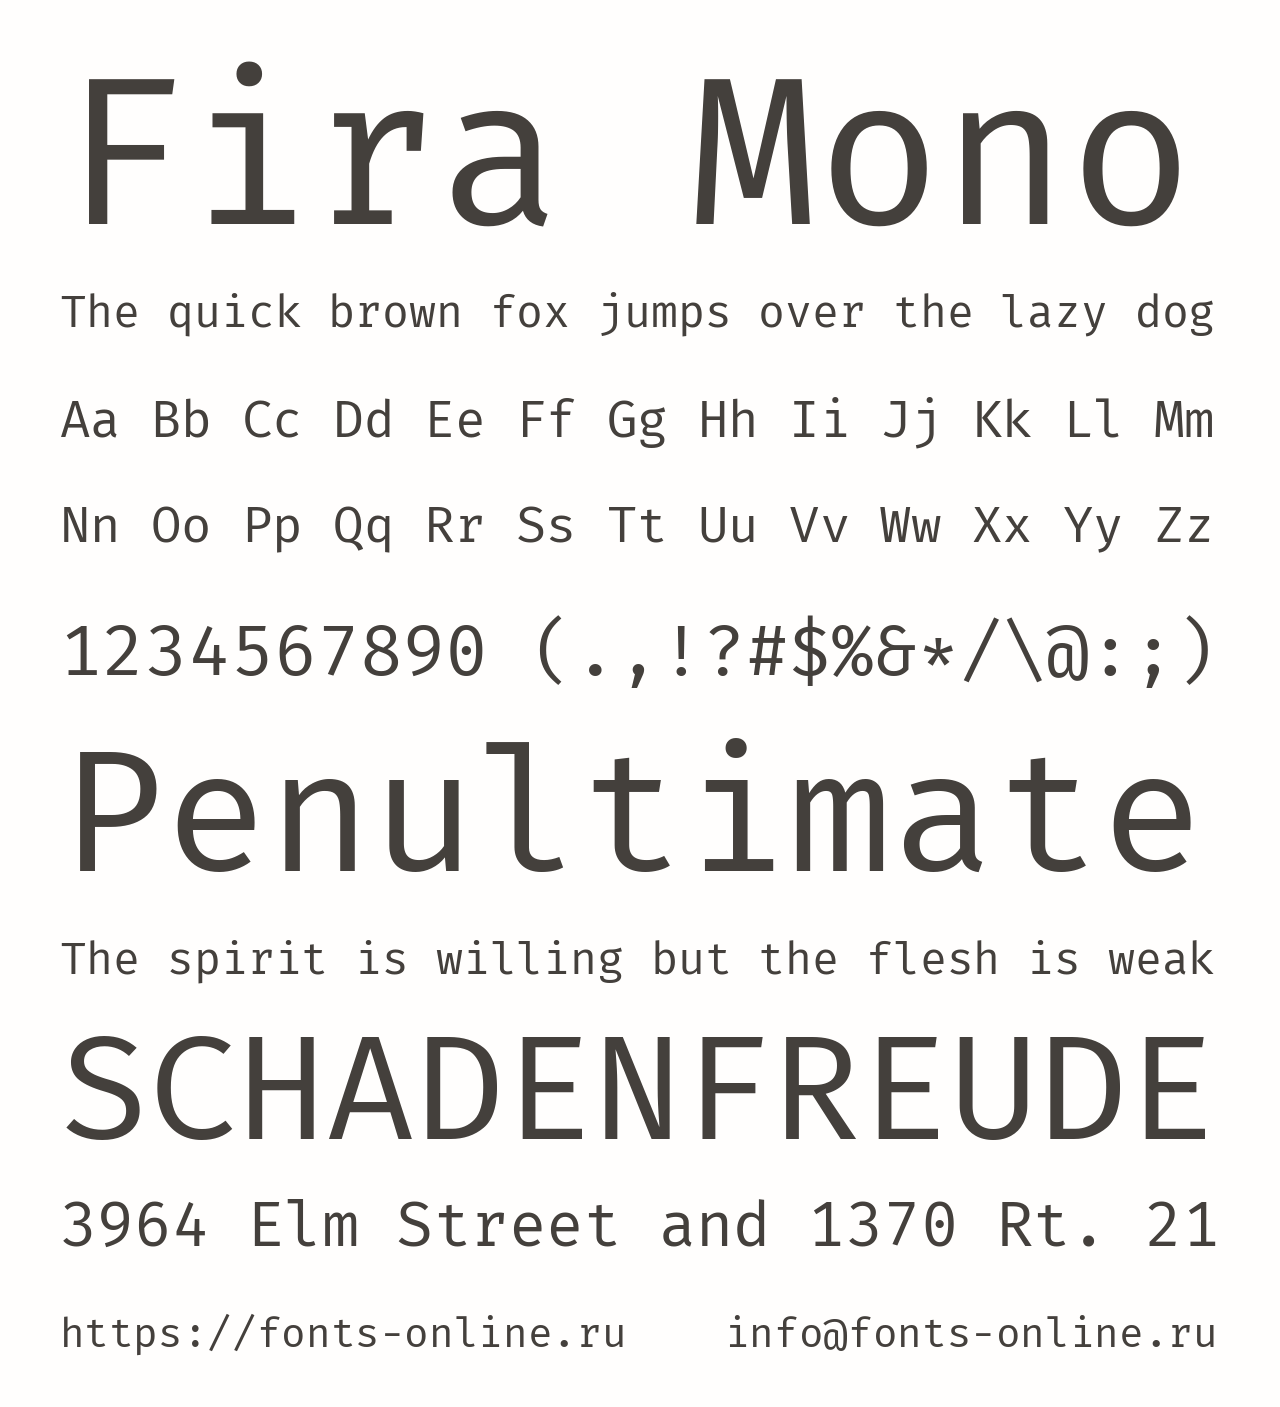 Шрифт Fira Mono